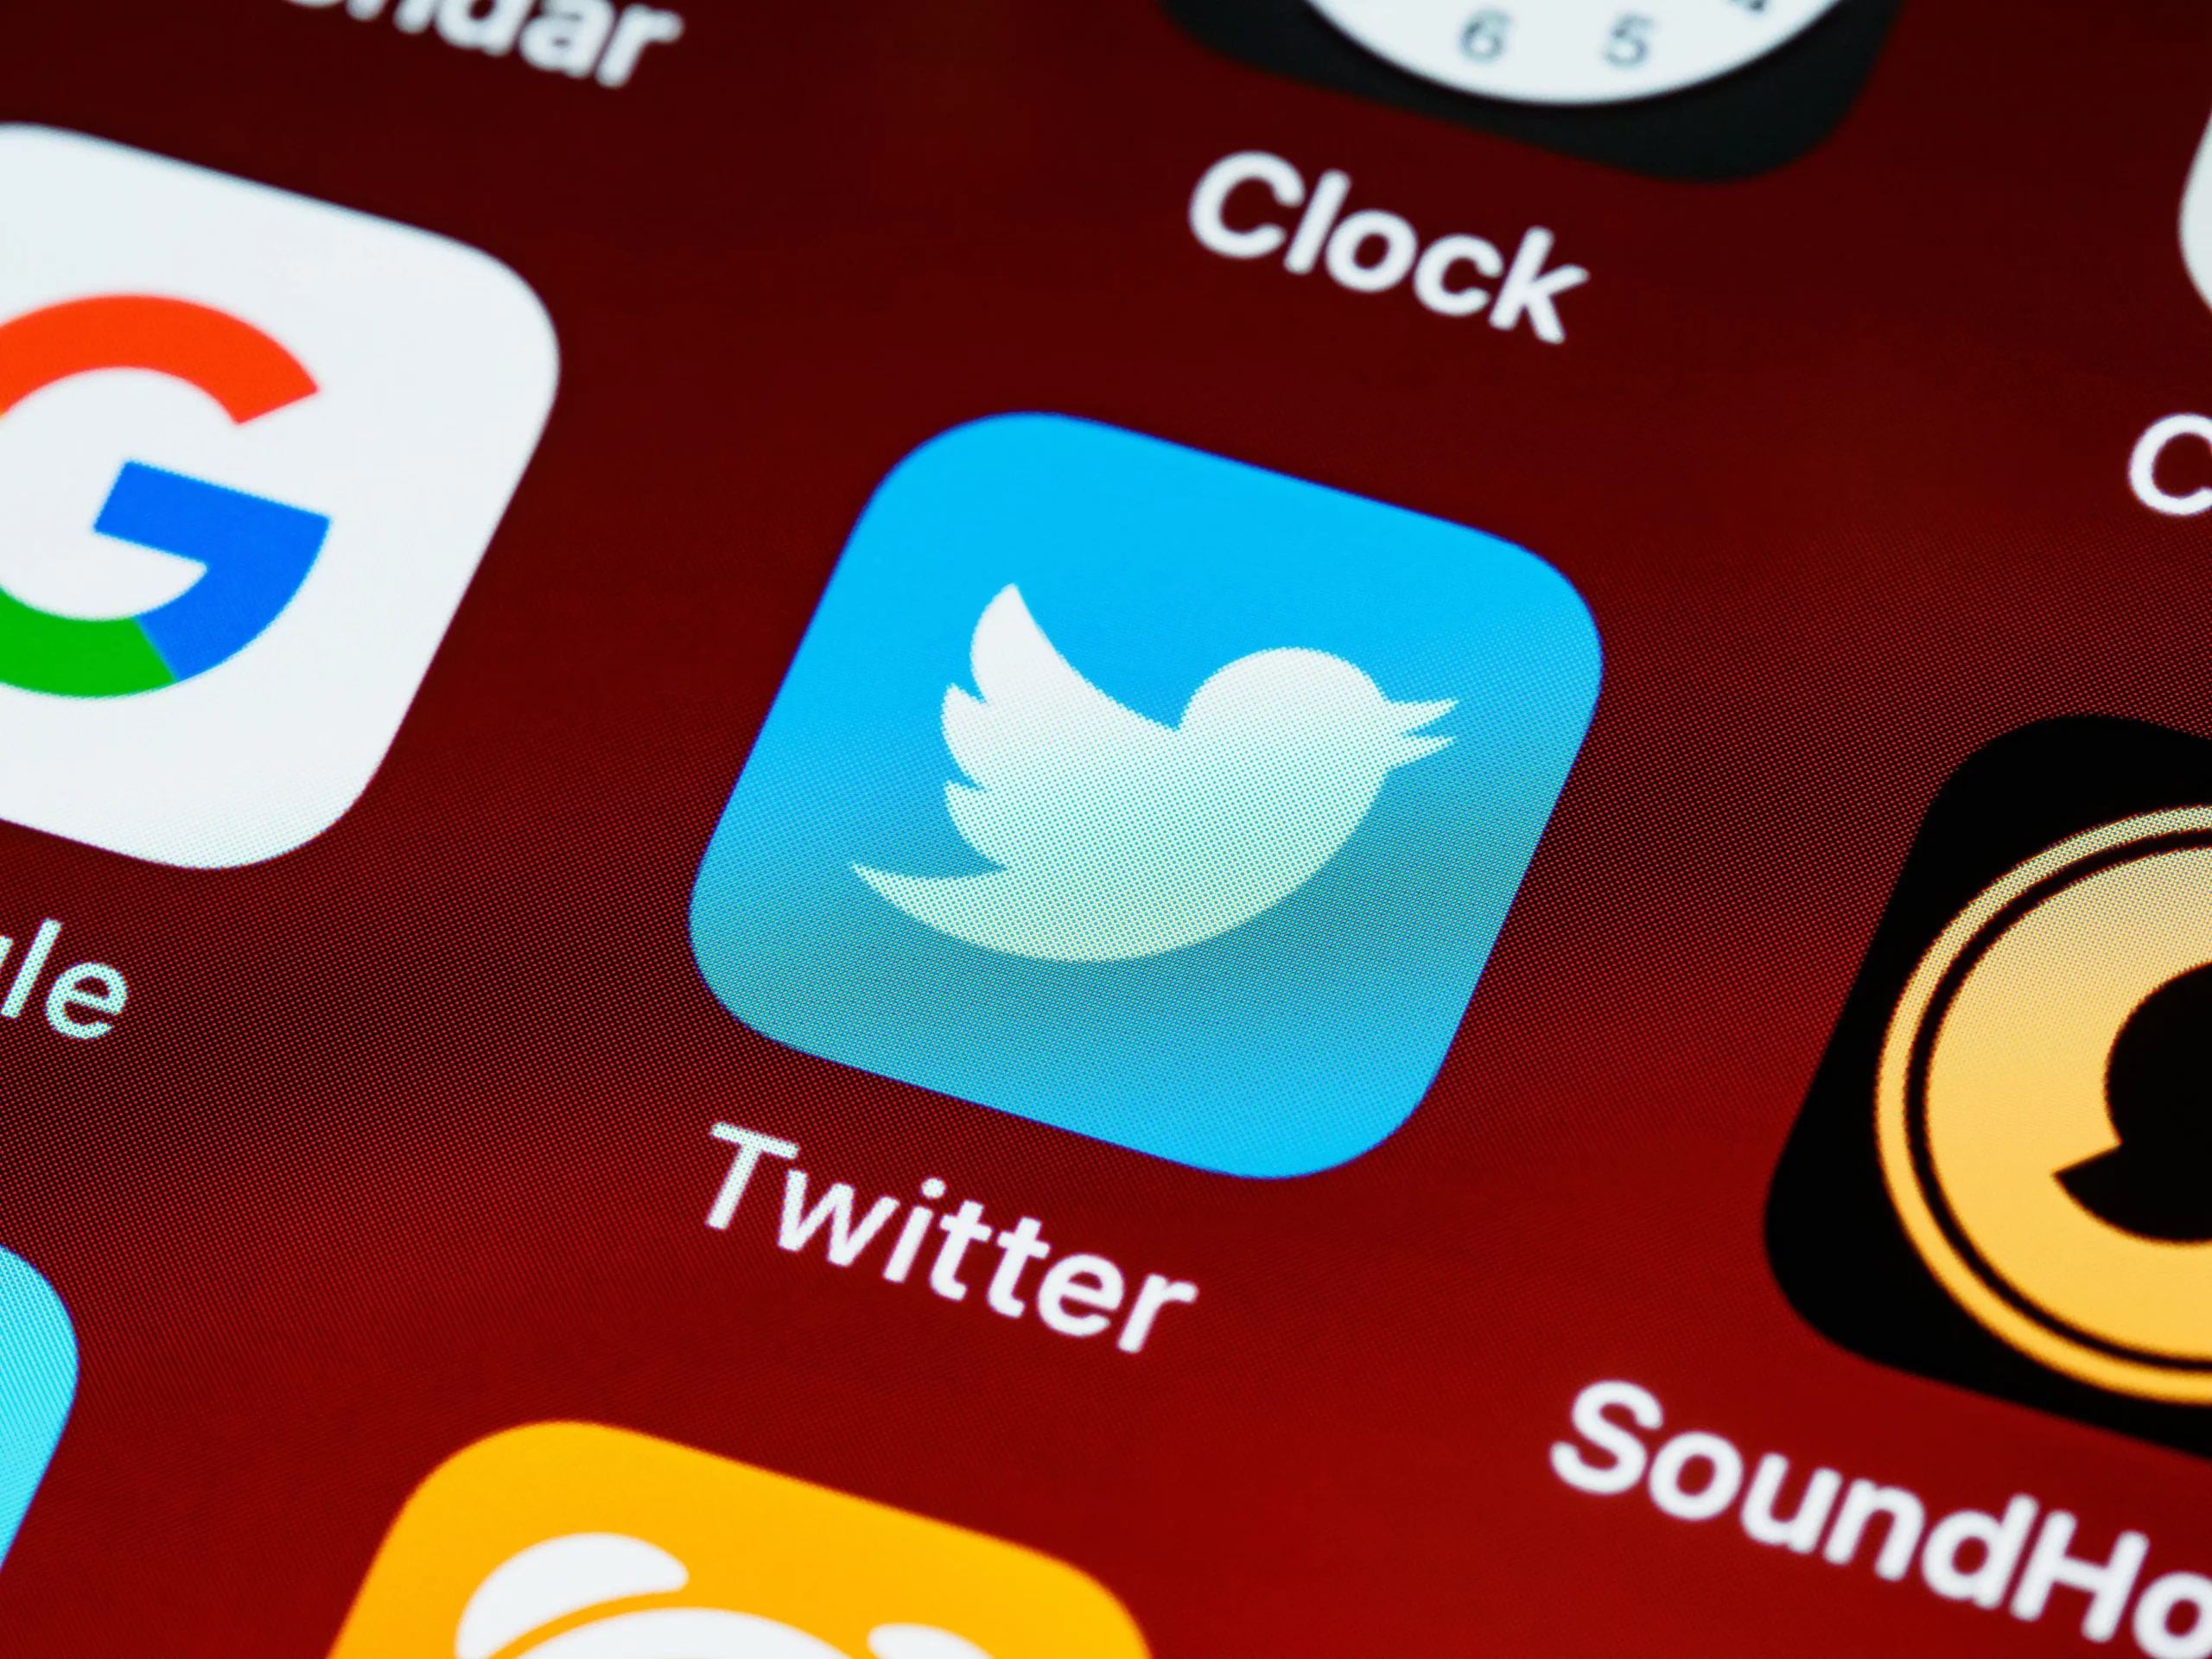 Das jetzt veraltete Twitter Icon auf dem Smartphone